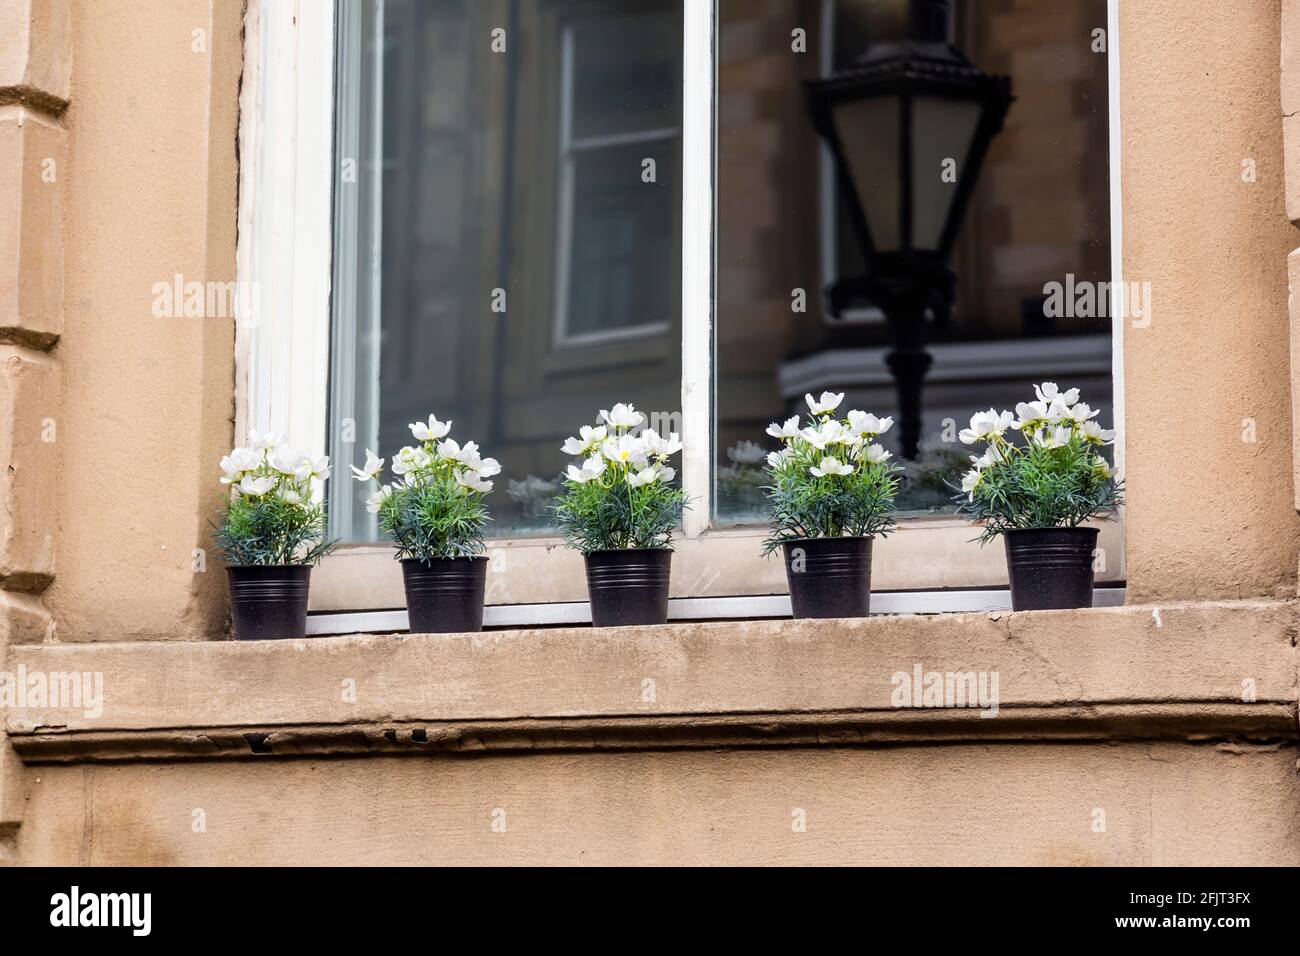 Fiori artificiali in pentole su una finestra esterna Ledge, Regno Unito Foto Stock